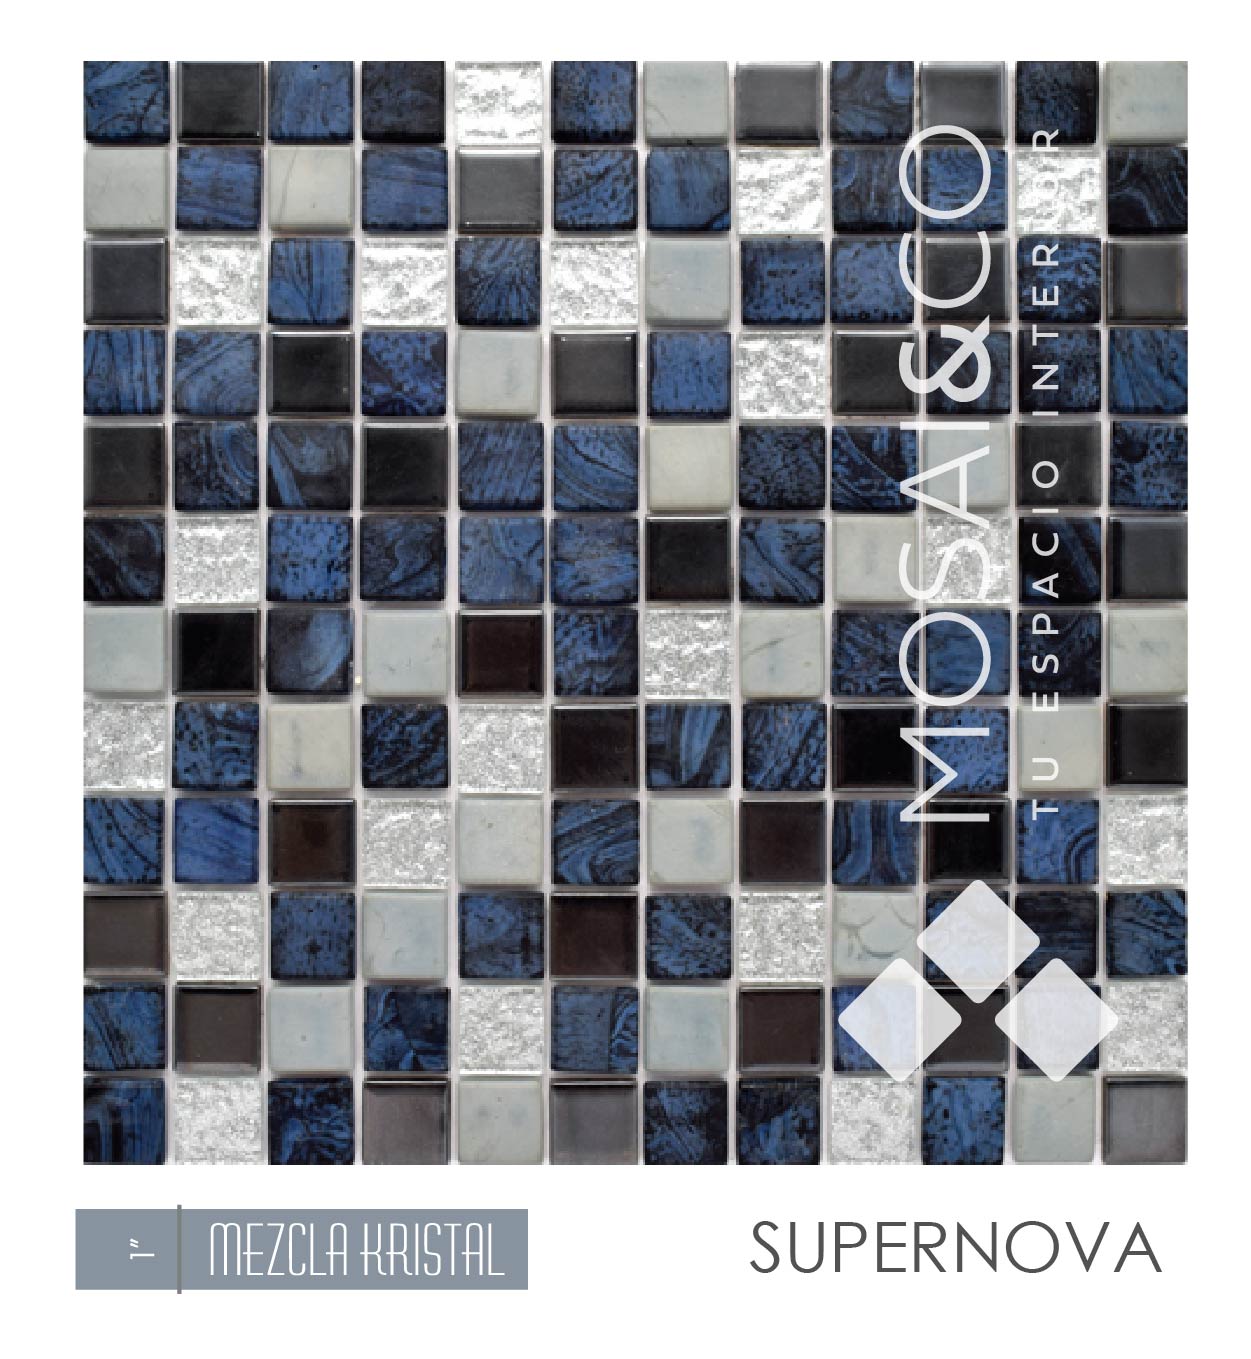 mosaico-linea-mezcla-kristal-mosaiandco-1-supernova